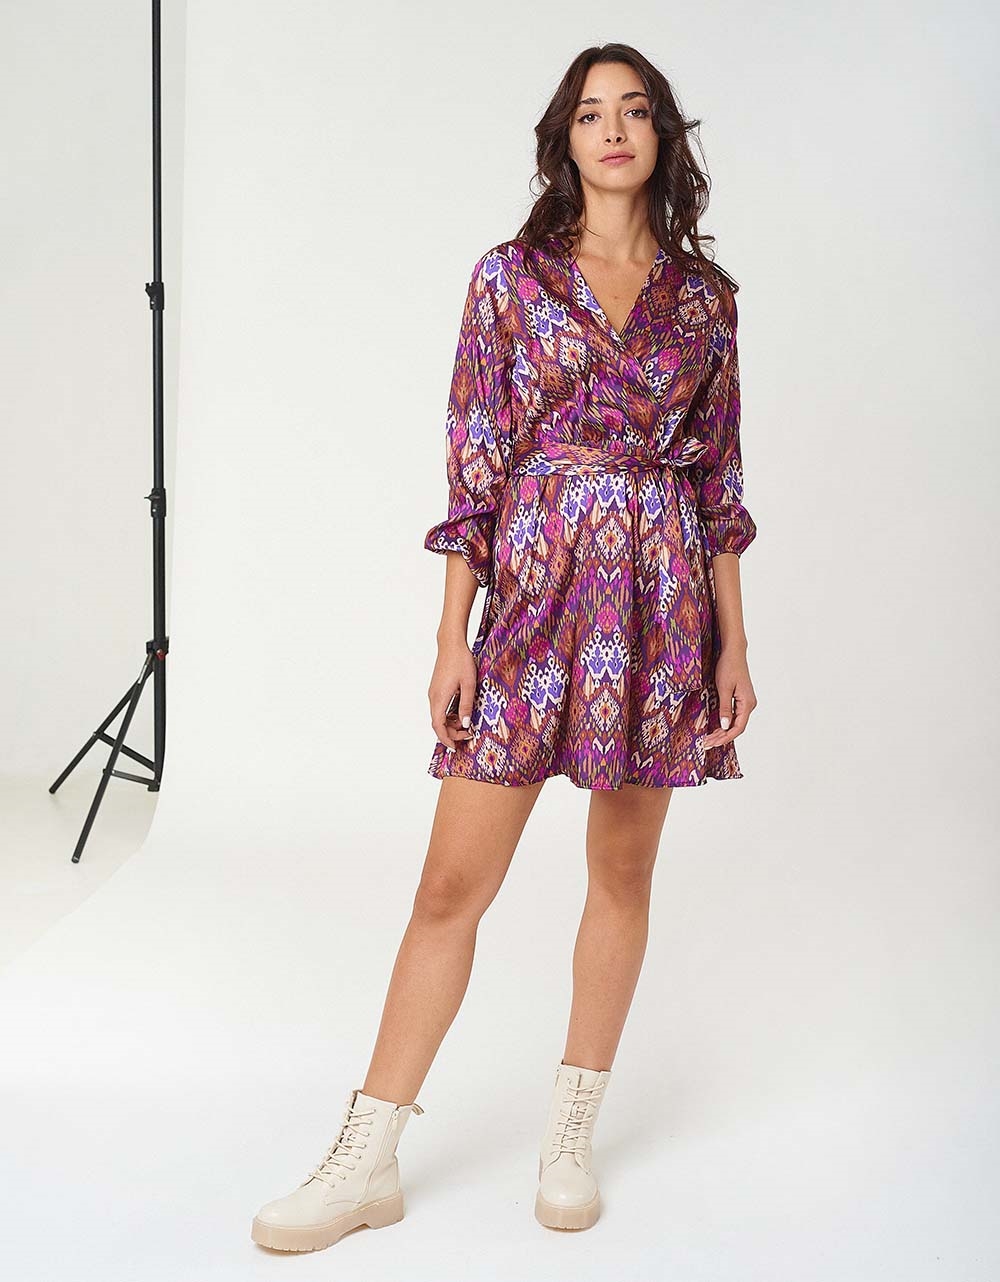 Εικόνα από Γυναικείο φόρεμα floral multi color print Μωβ